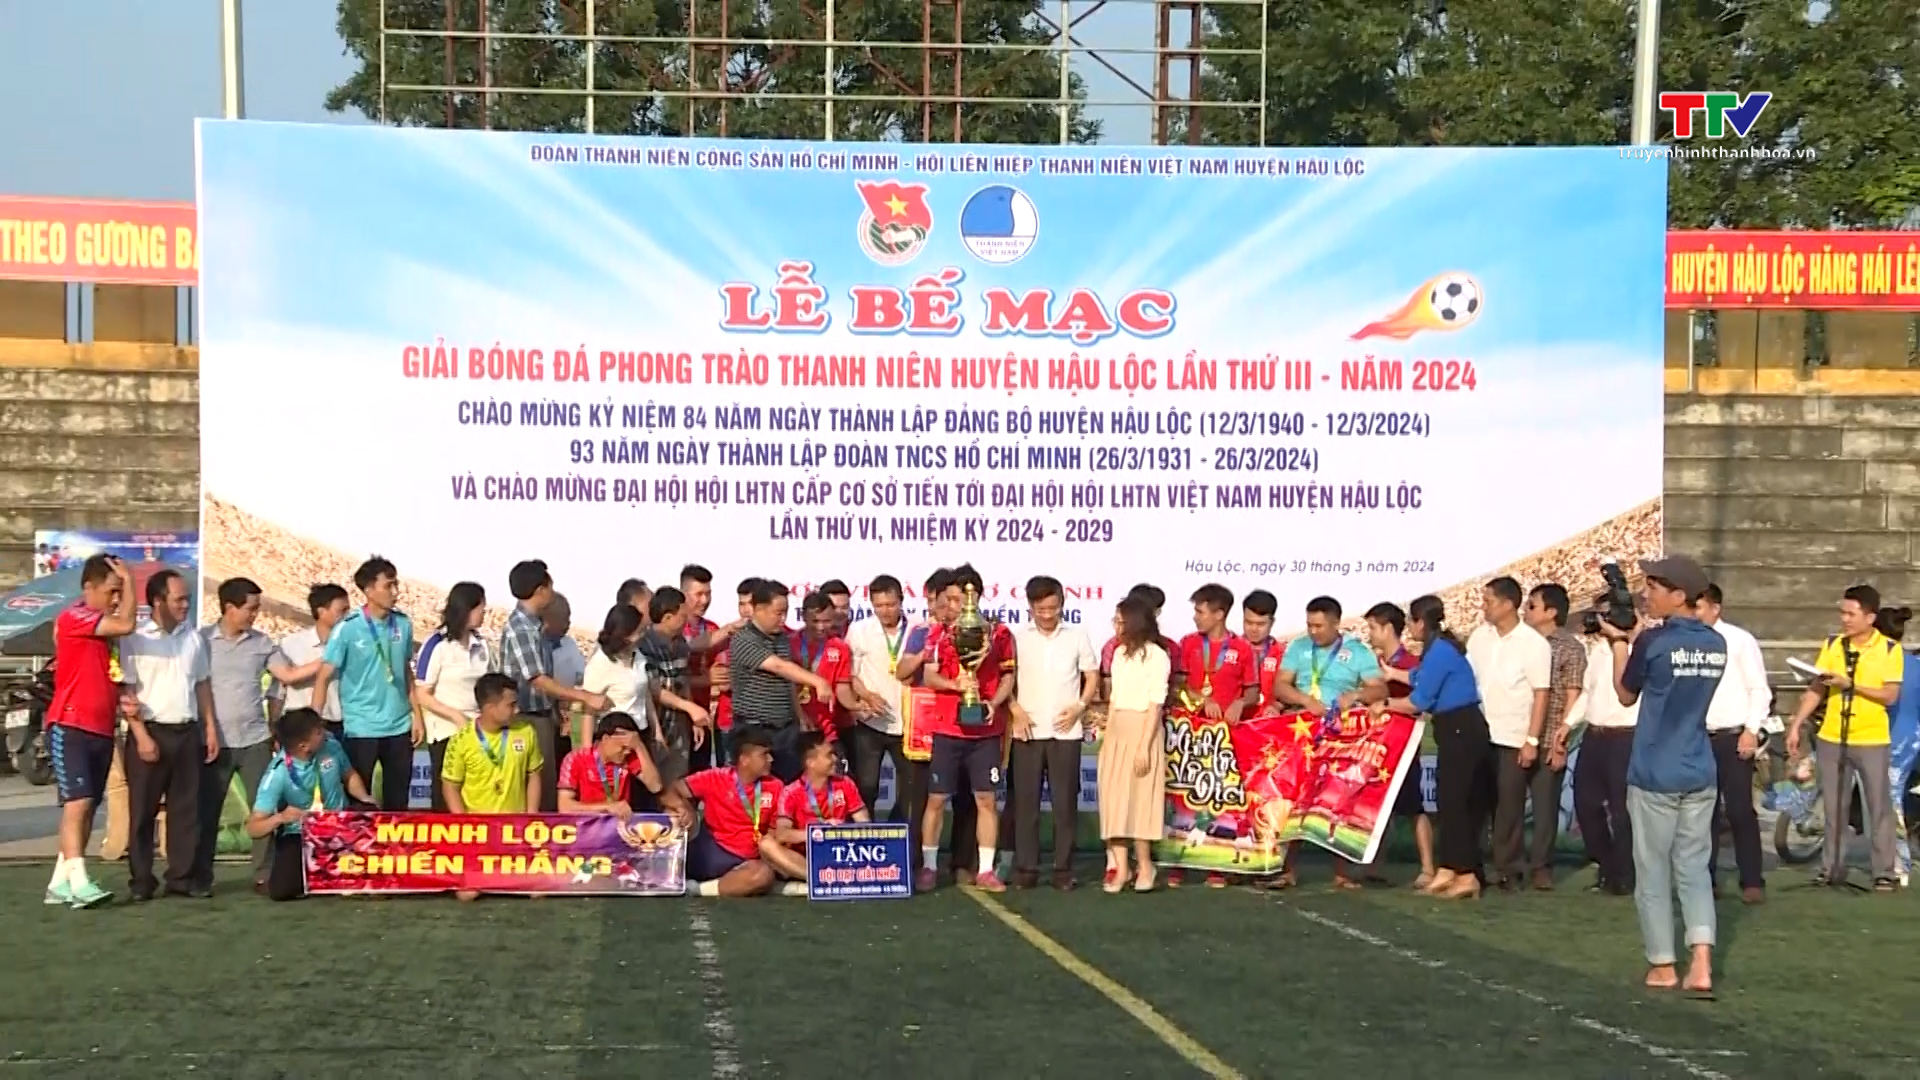 Sôi nổi giải bóng đá phong trào thanh niên huyện Hậu Lộc lần thứ III năm 2024 - Ảnh 2.